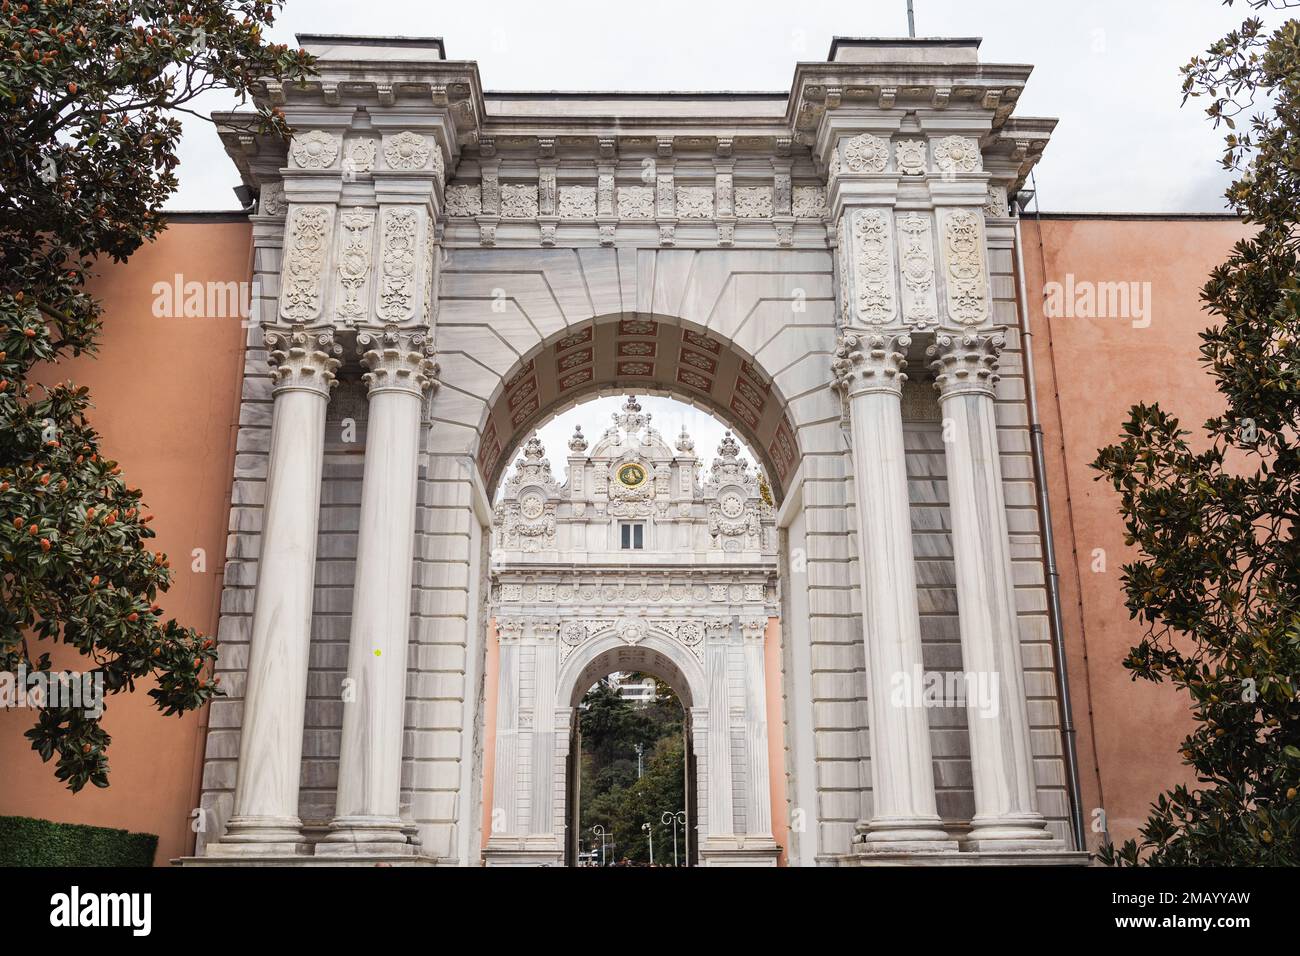 Une des portes du palais de Dolmabahce, Istanbul, Turquie.lieu touristique Banque D'Images